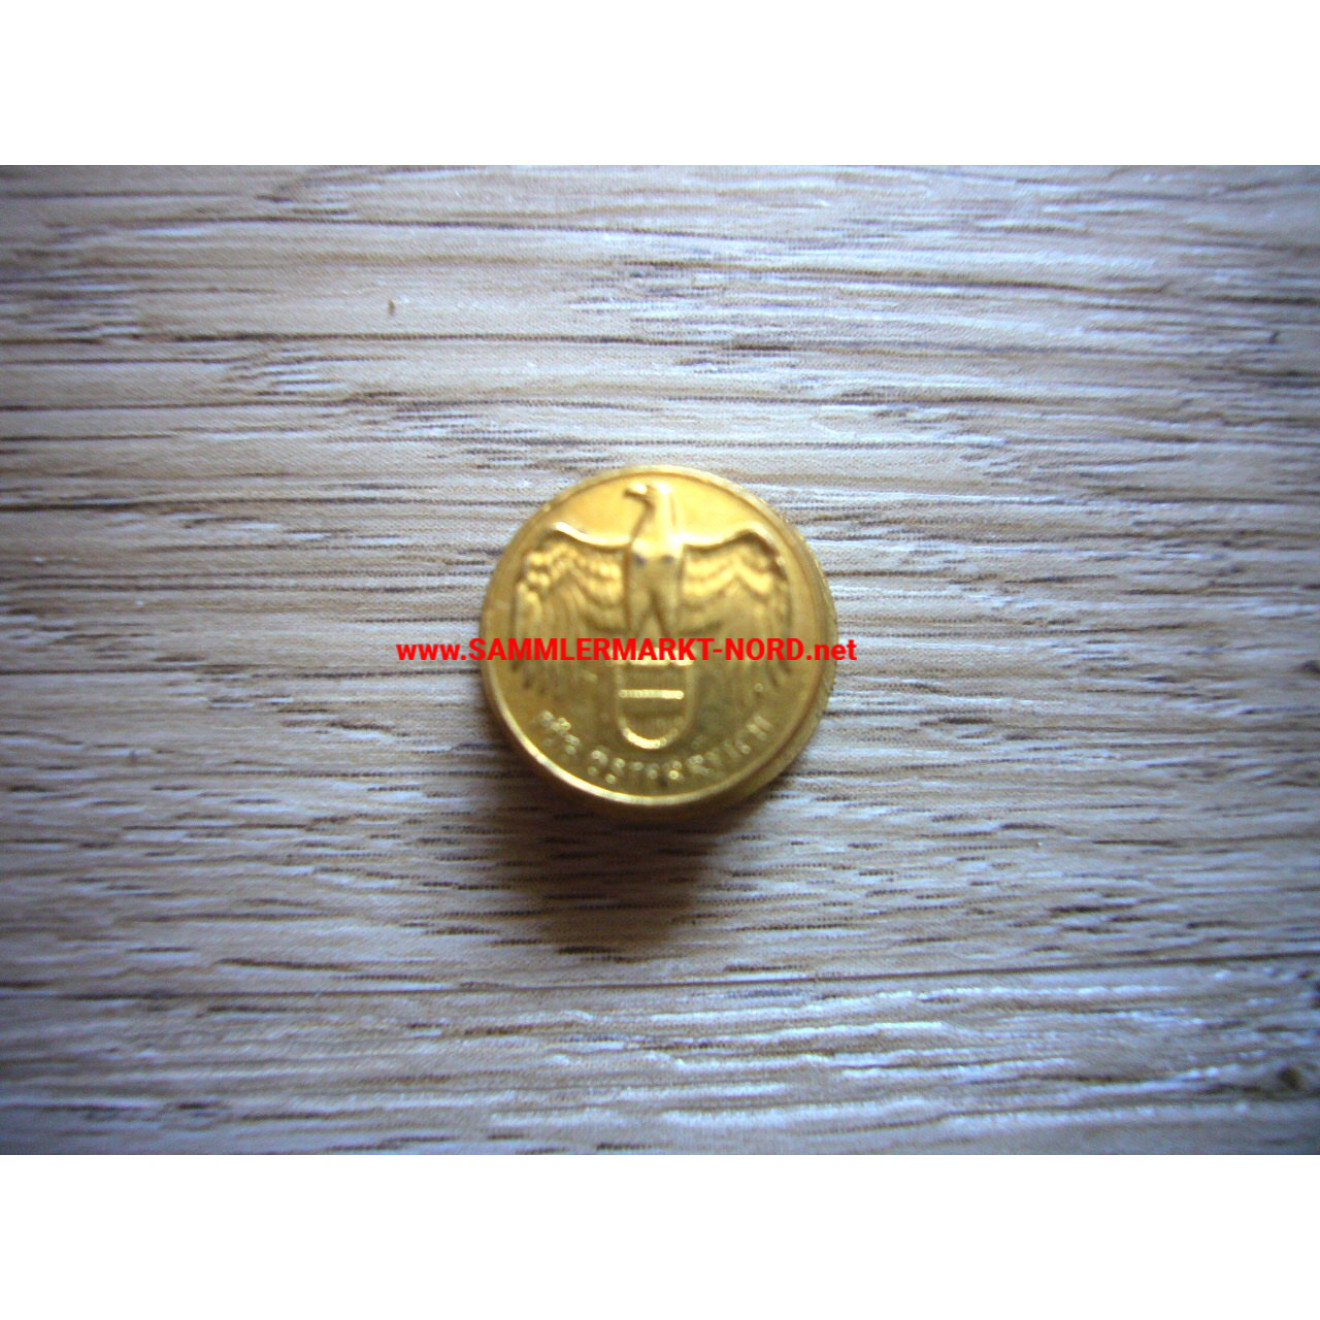 Austria - War Commemorative Medal "For Austria" - Buttonhole Badge